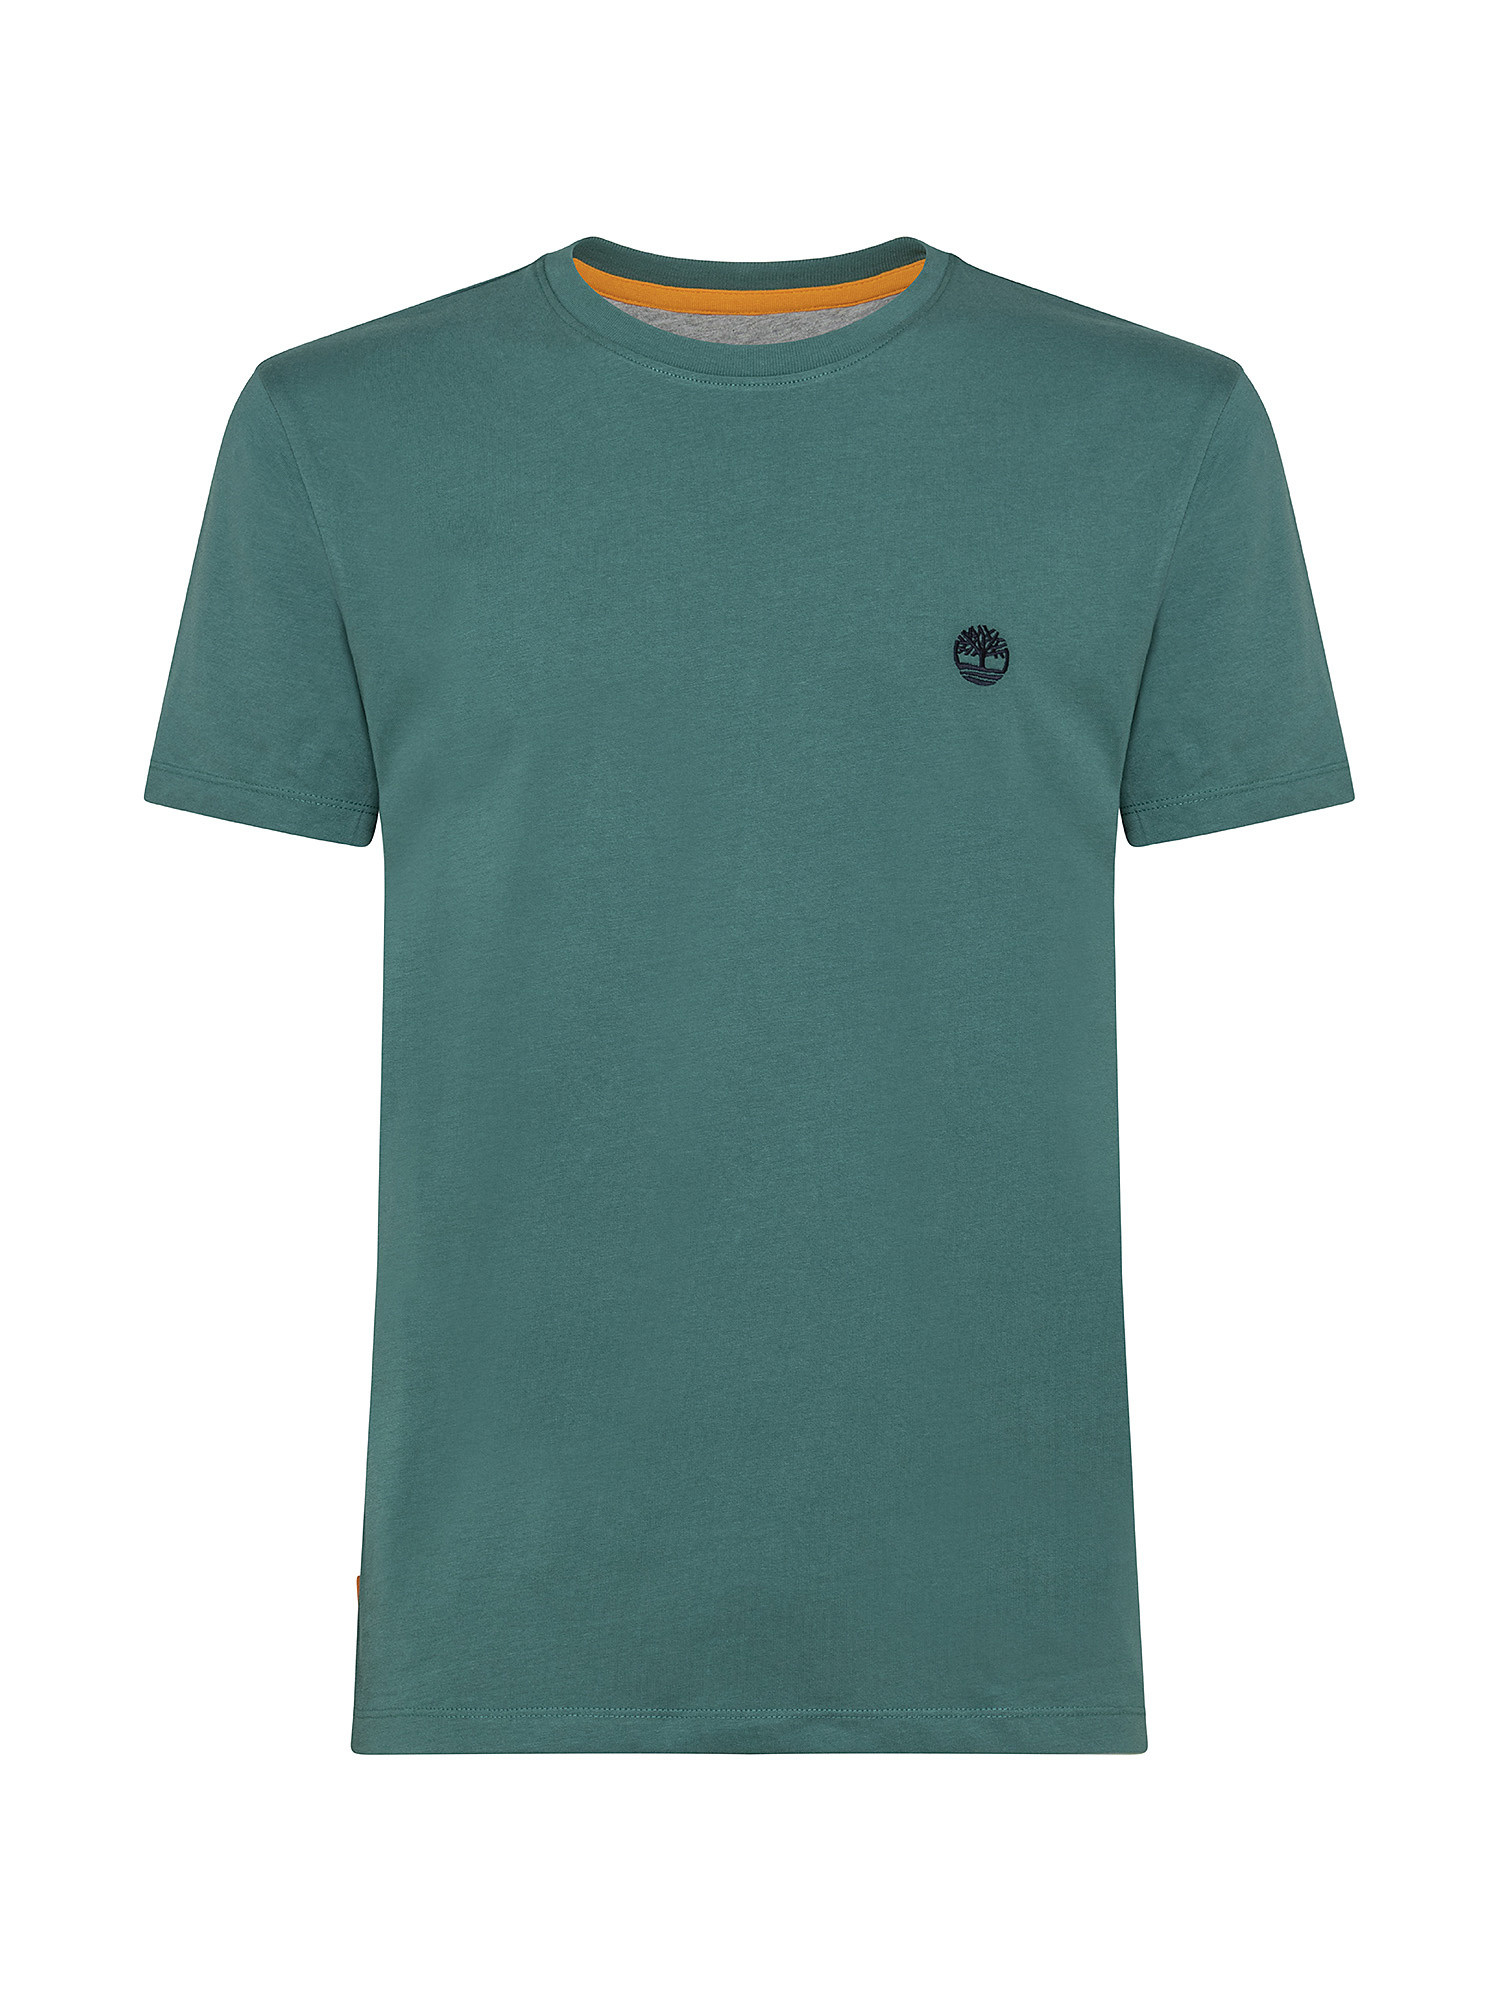 Dunstan River Men's T-Shirt, Green, large image number 0